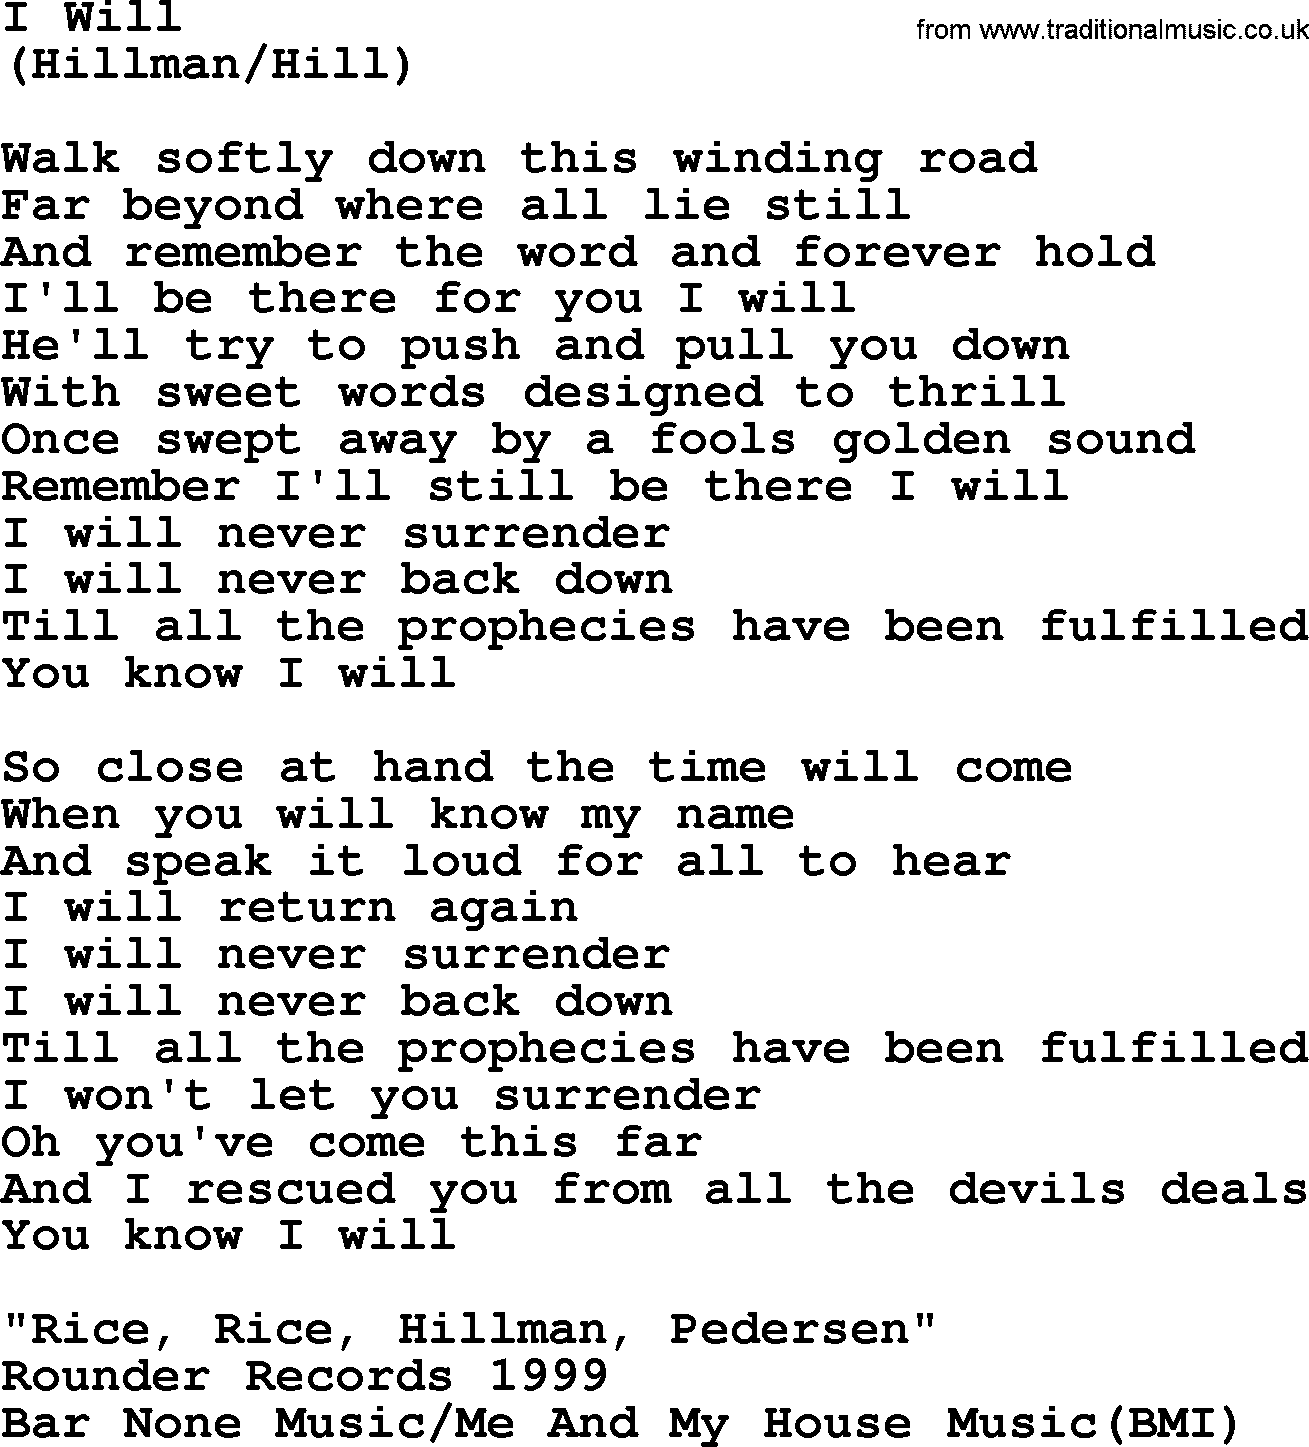 The Byrds song I Will, lyrics